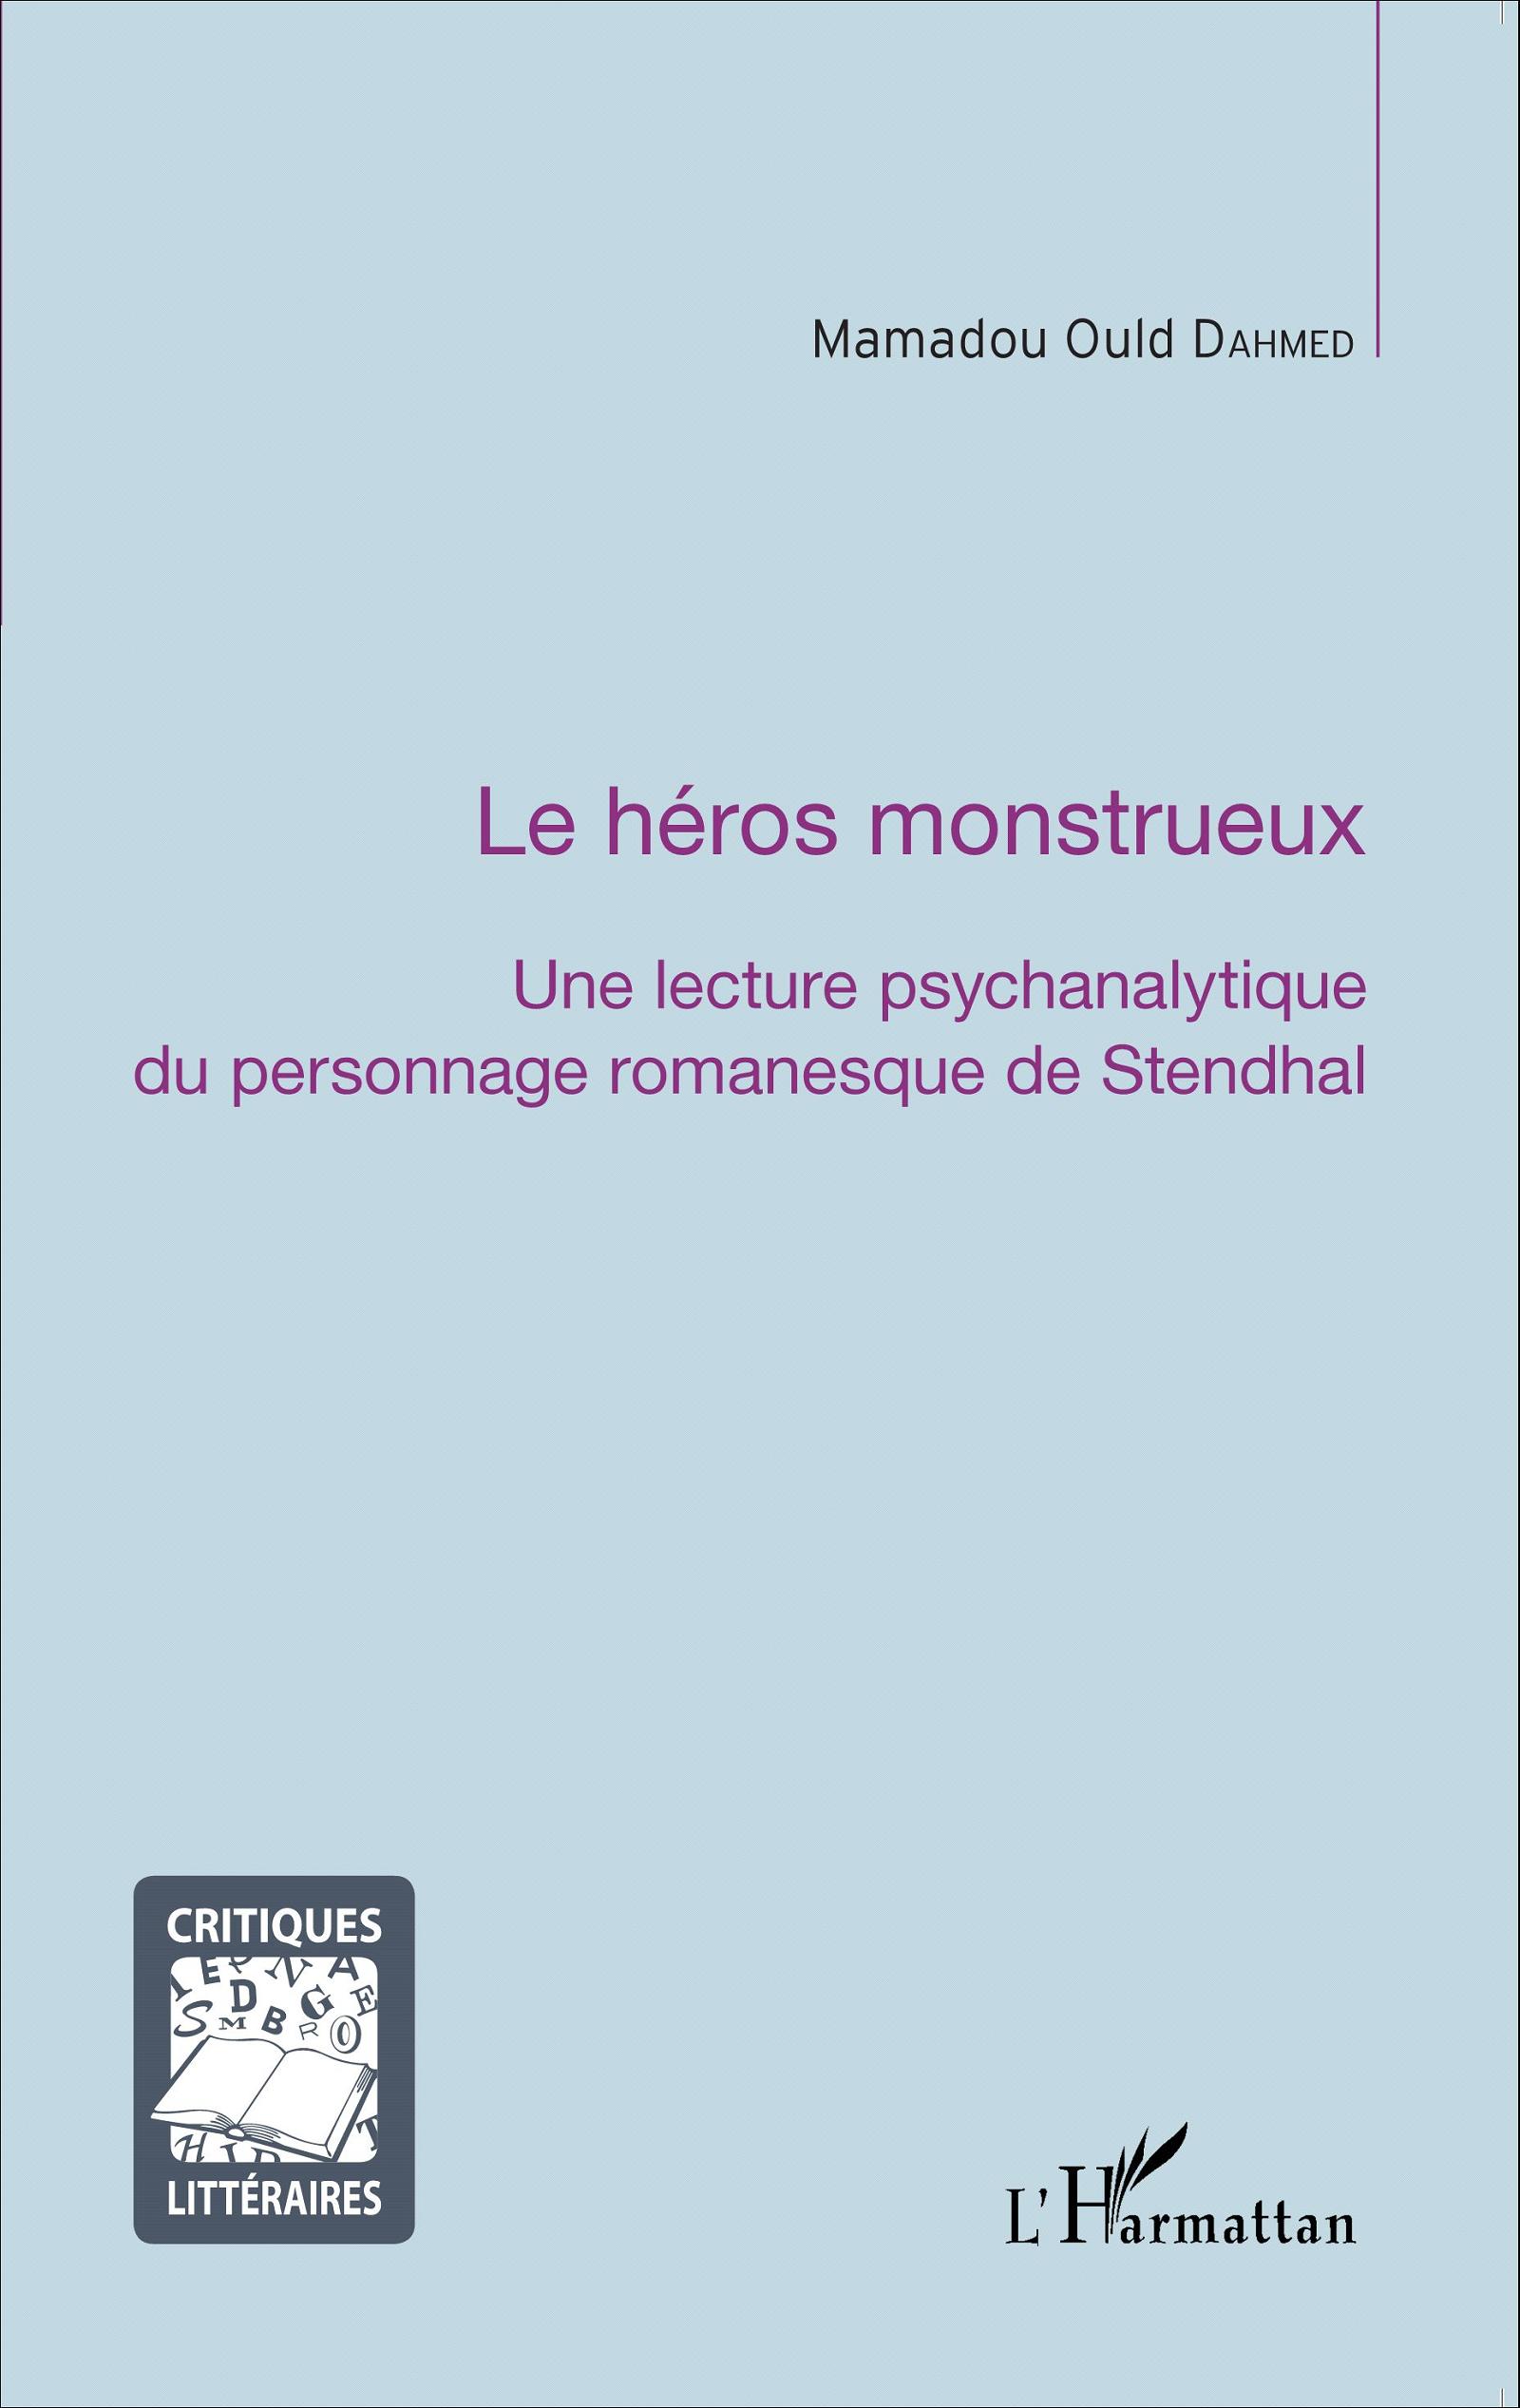 M. Ould Dahmed, Le Héros monstrueux, une lecture psychanalytique du personnage romanesque de Stendhal